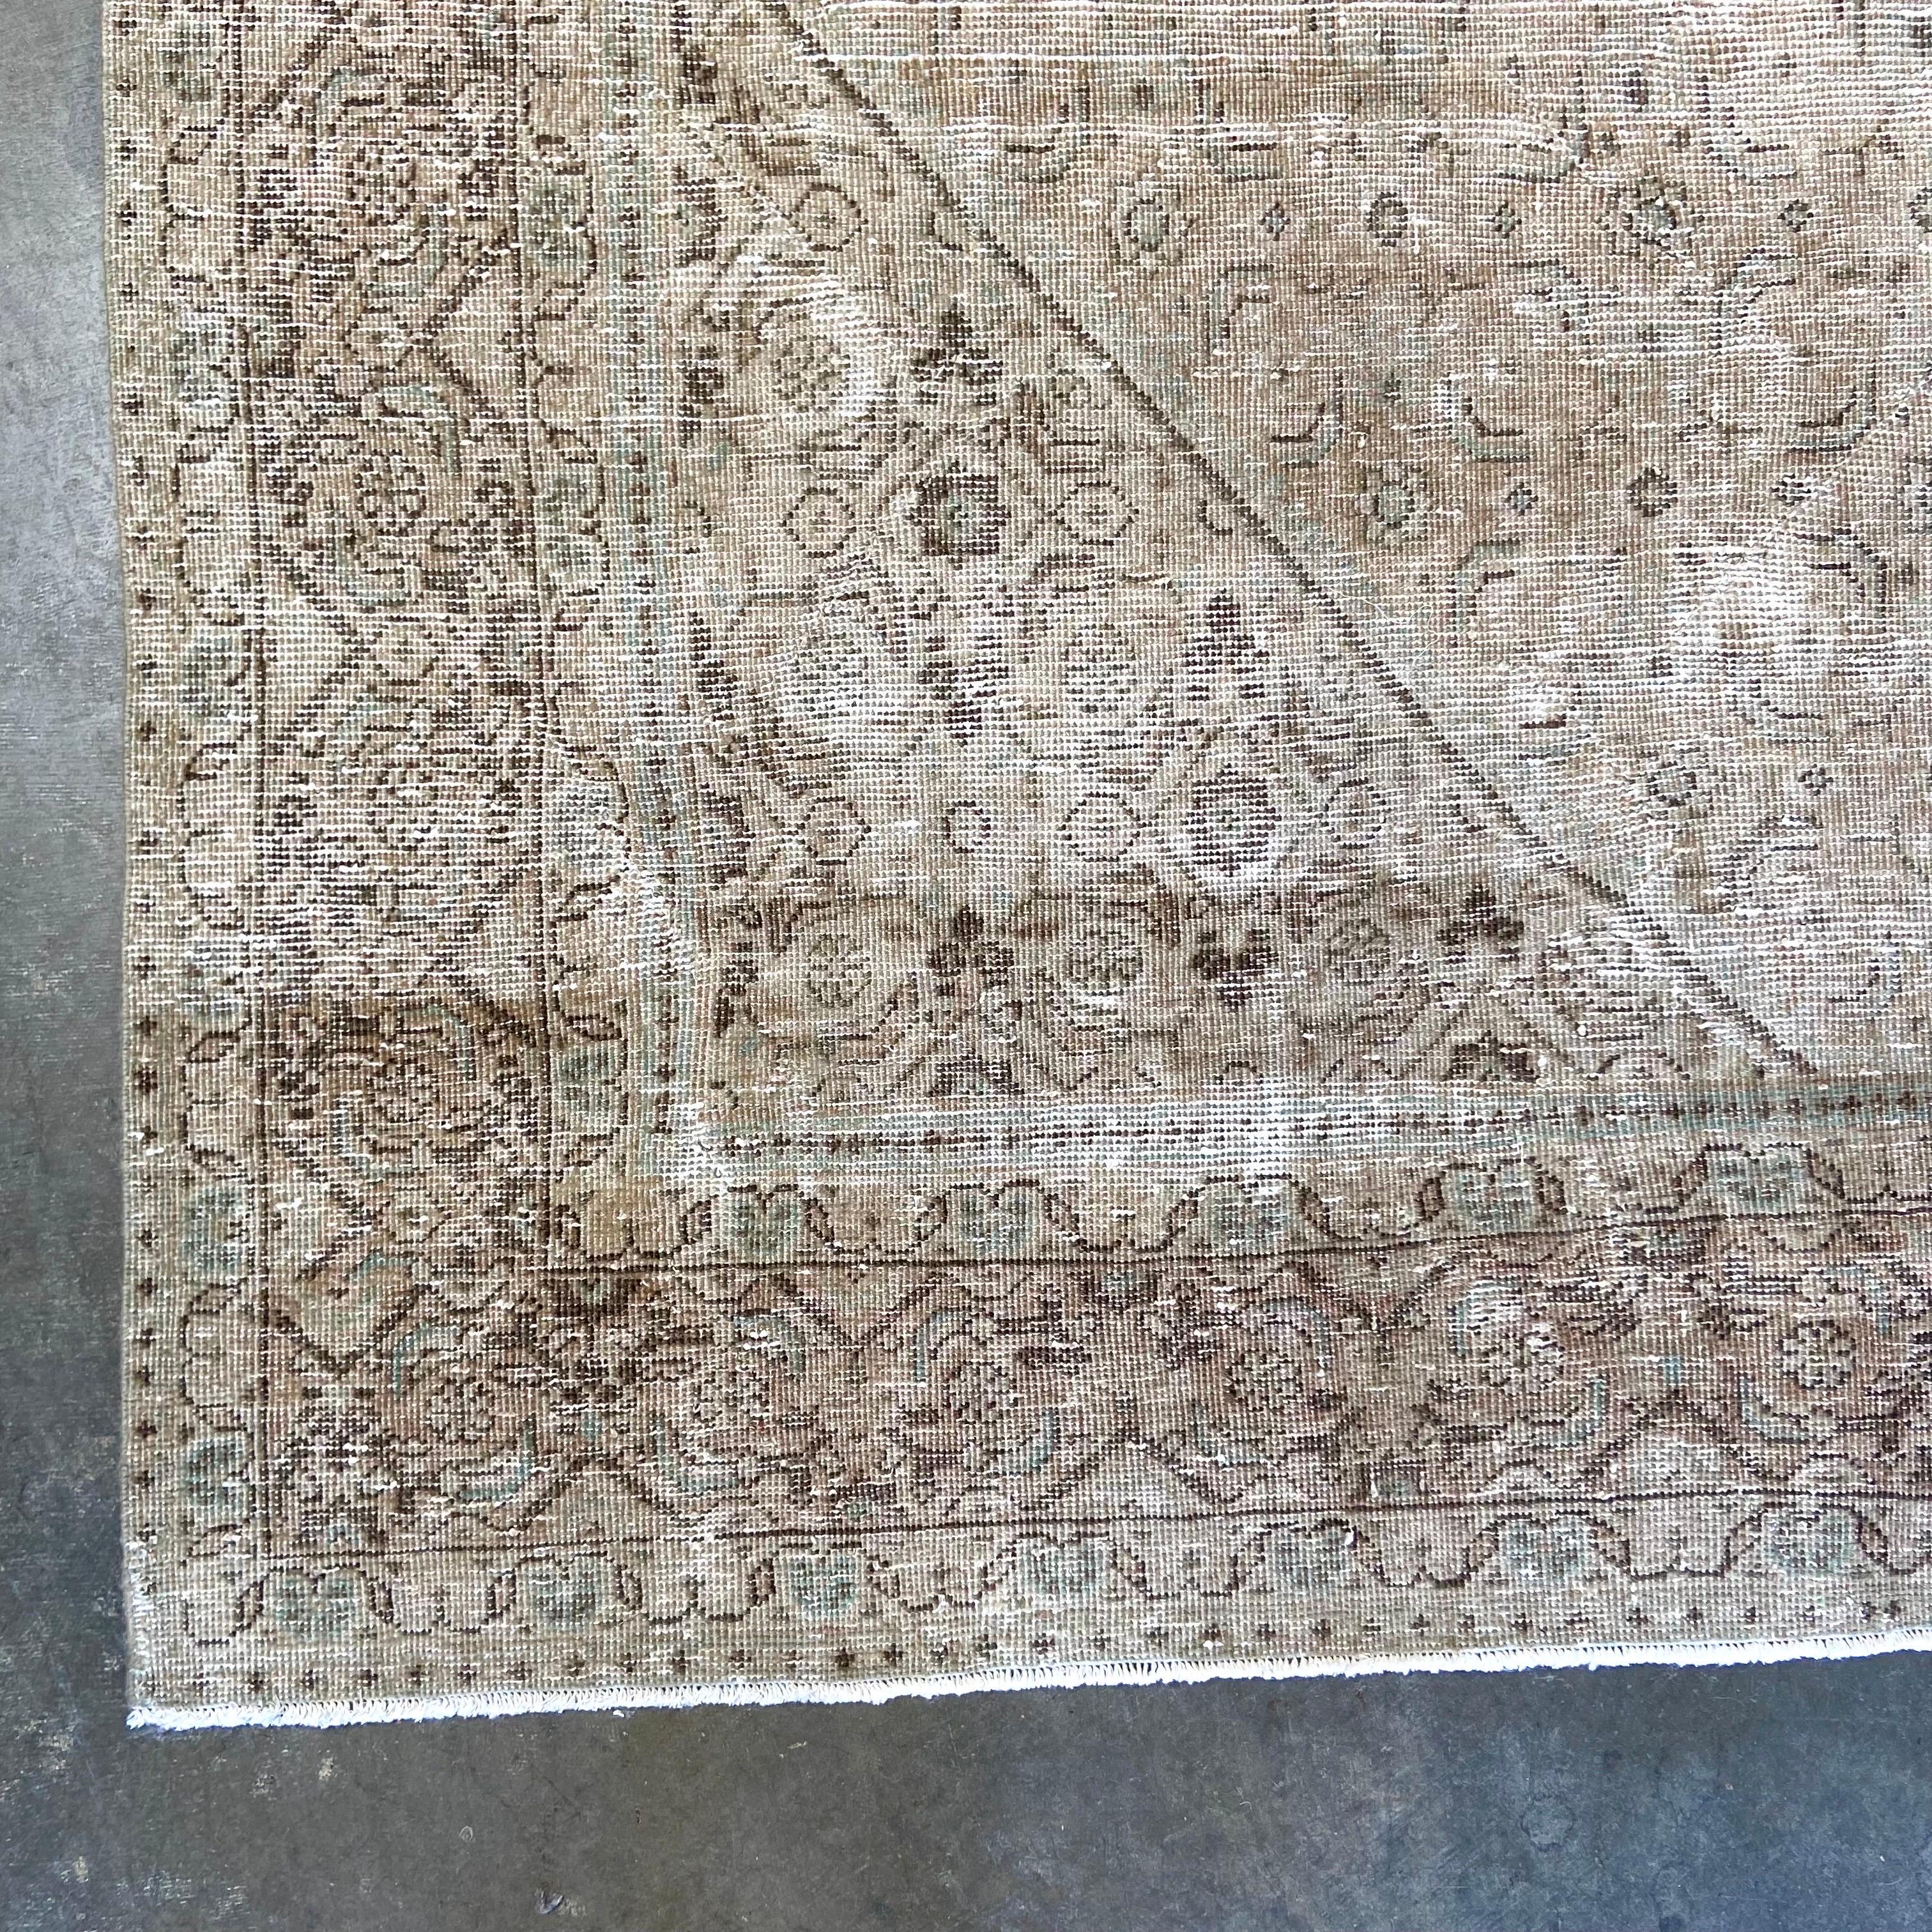 Türkischer Vintage-Teppich
Dieser türkische Teppich ist ein antiker Teppich in Erbstückqualität mit zeitlosen Farbtönen und einem komplizierten Muster, das jedem Raum, den es schmückt, Geschichte, Schönheit und Charakter verleiht. Wie bei allen